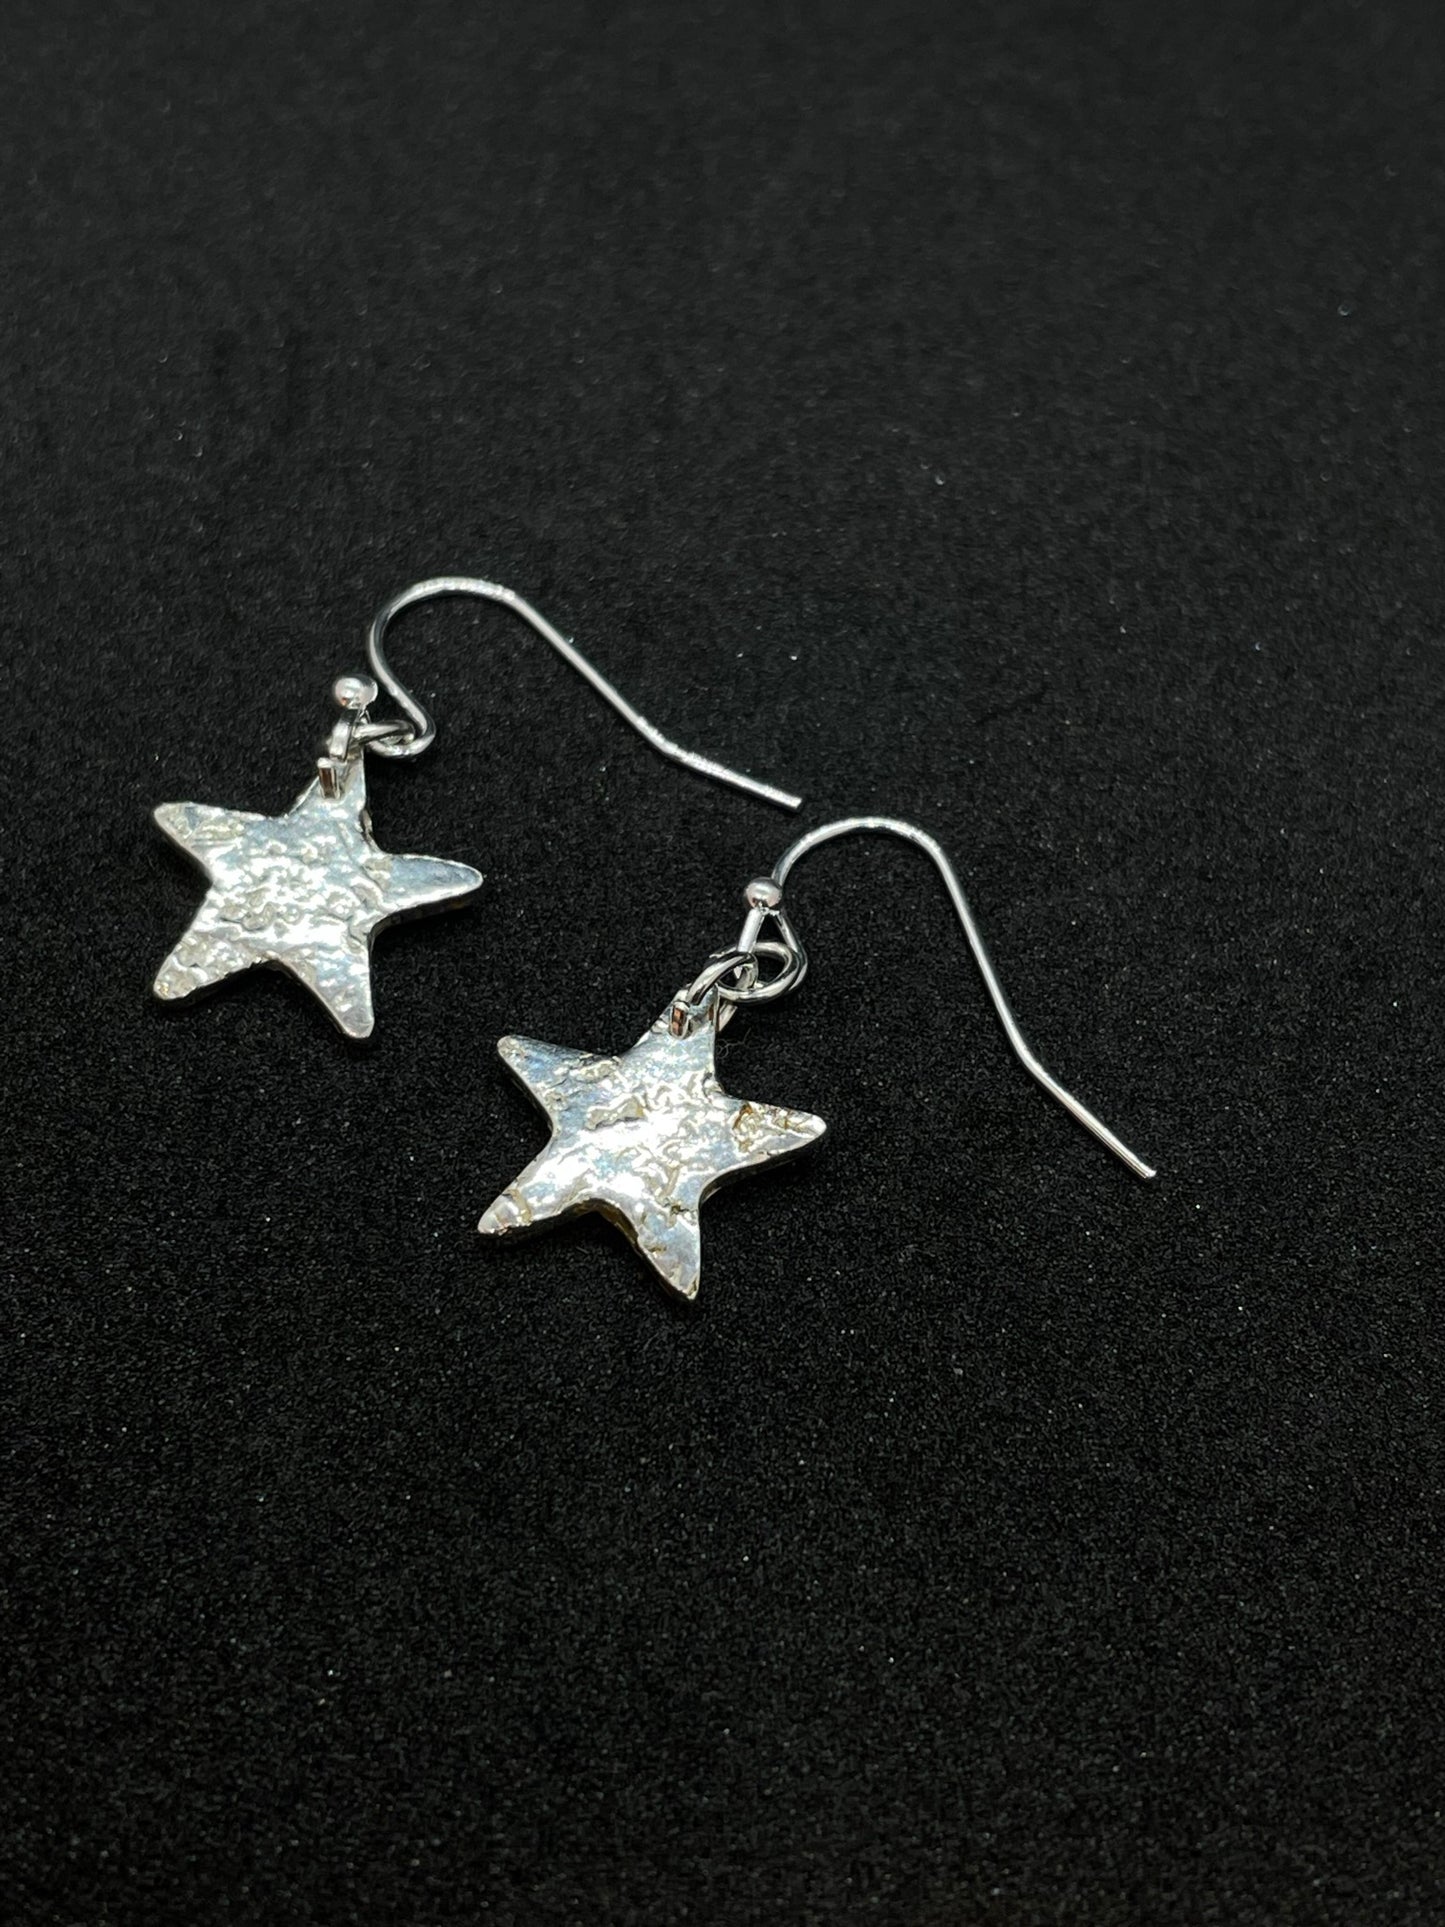 Small silver star earrings